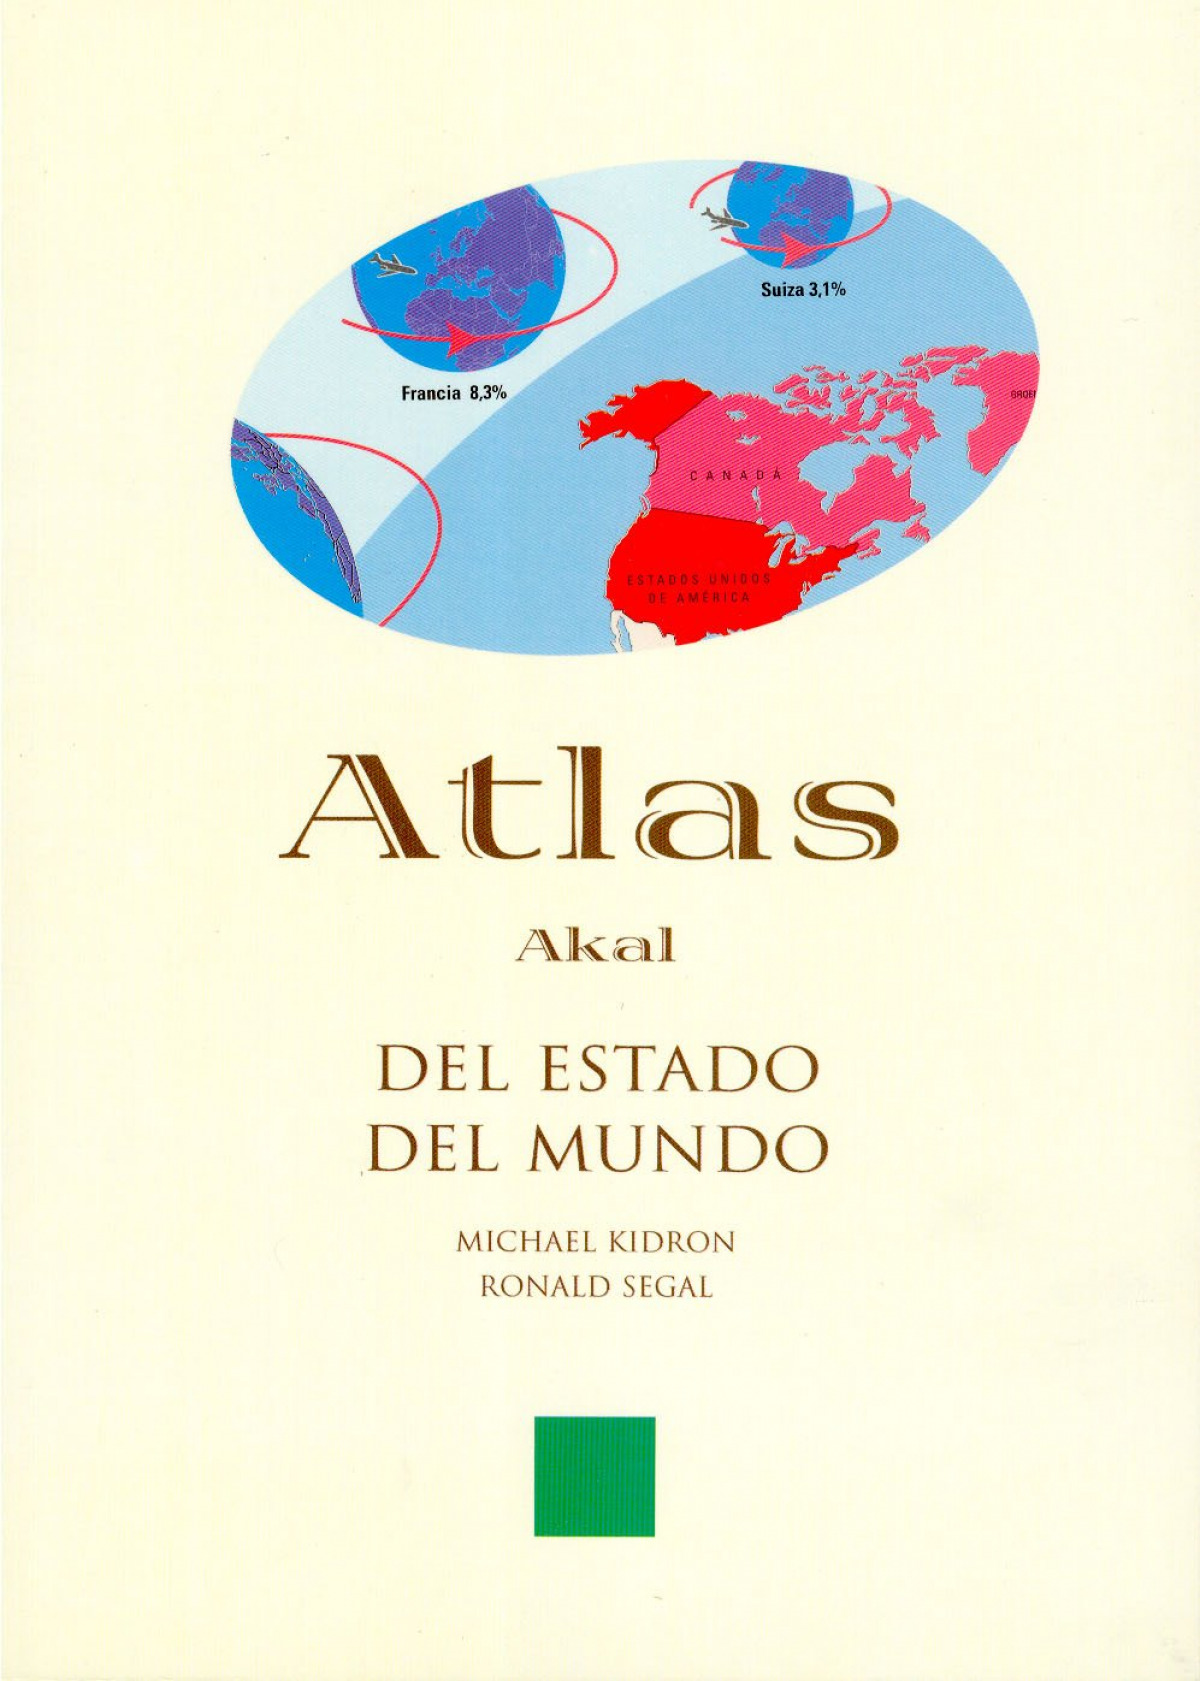 Atlas del estado del mundo (atlas akal) - Kidron, Michael